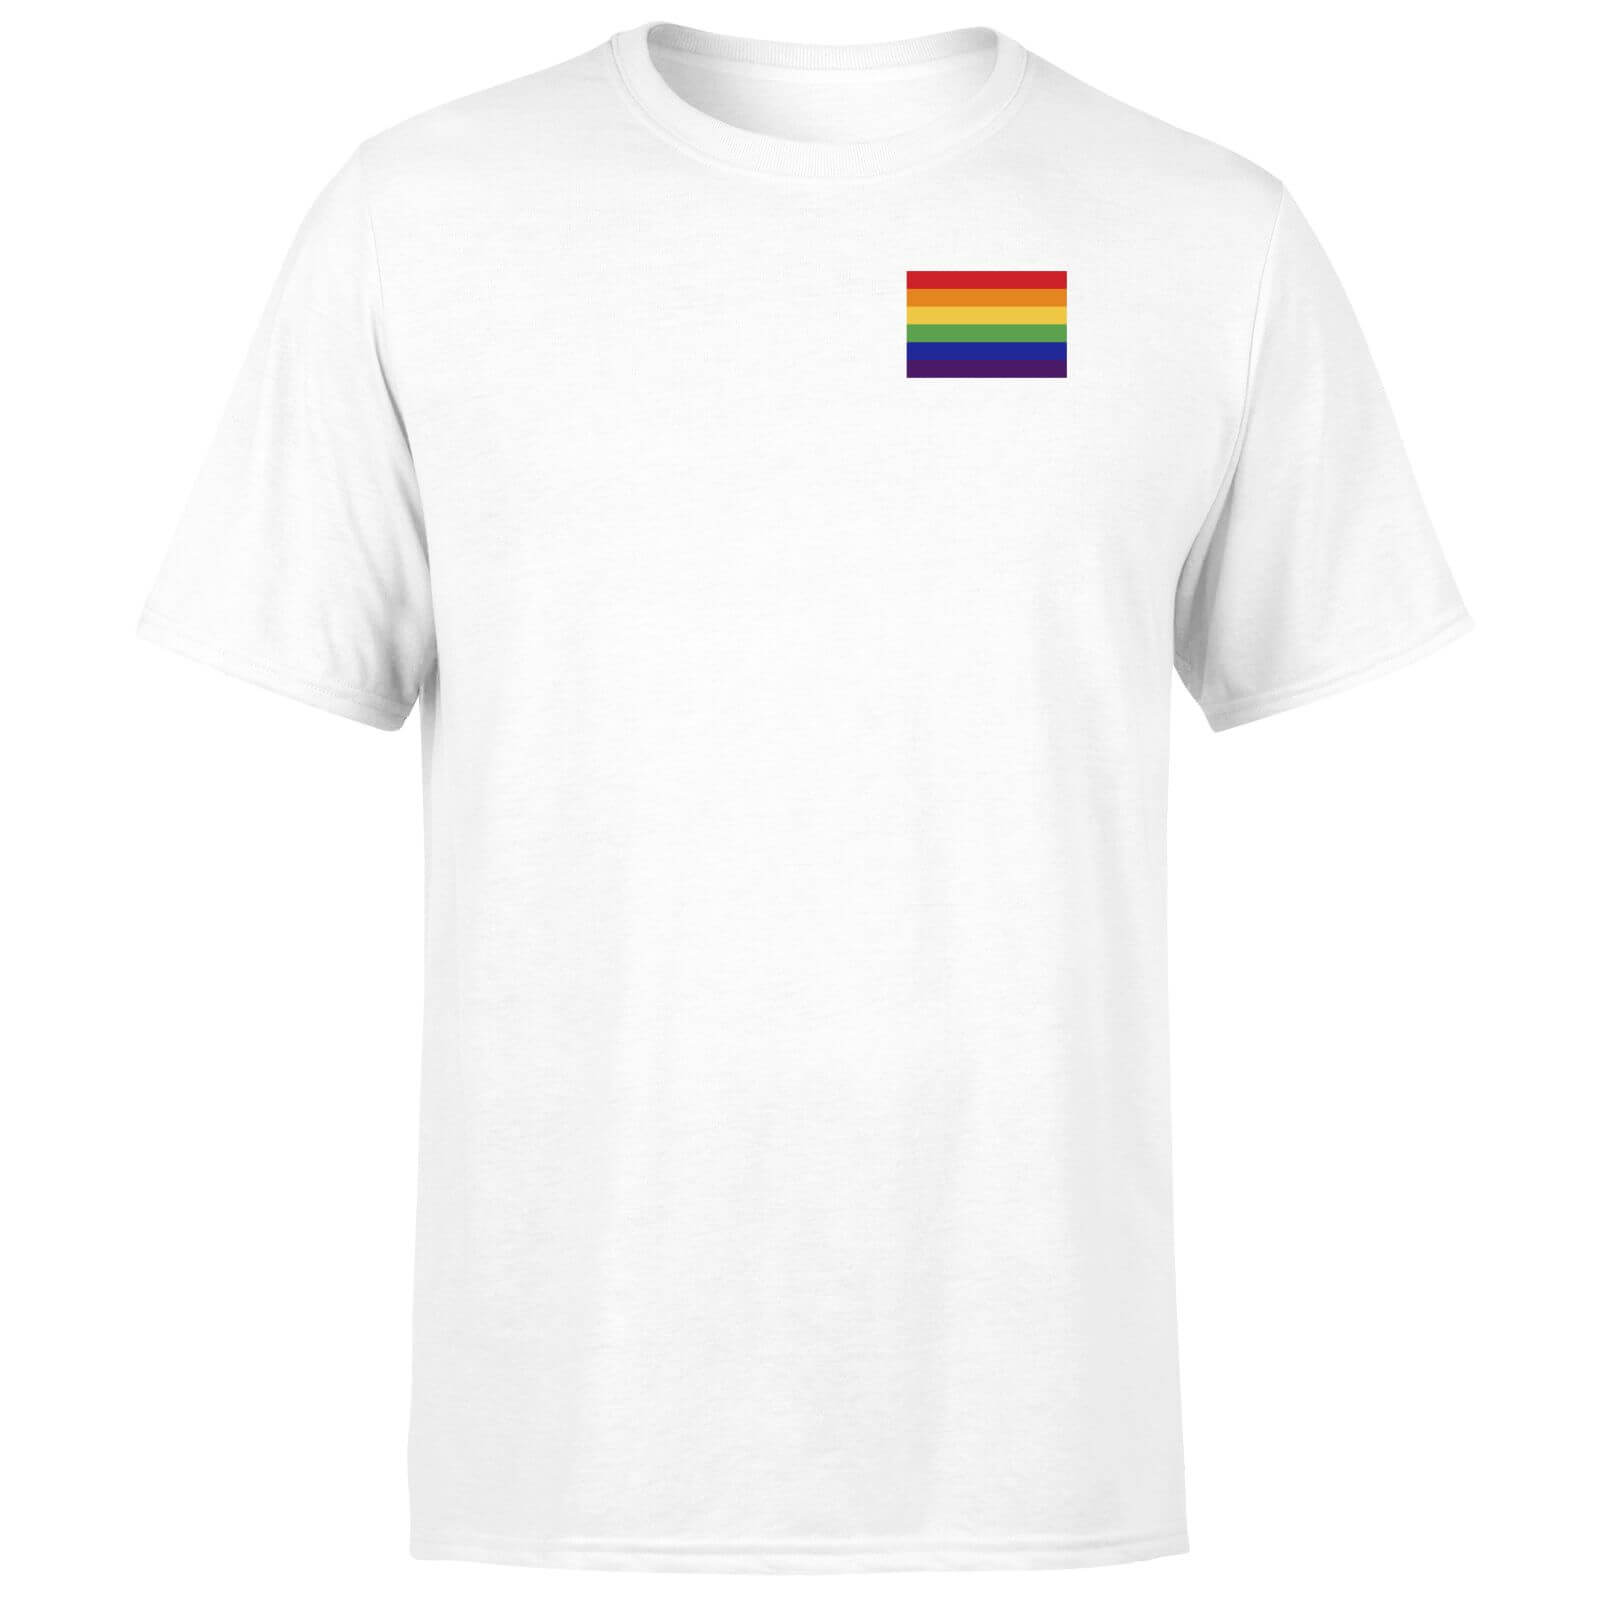 Rainbow Pride Flag T-Shirt - White - XS - White